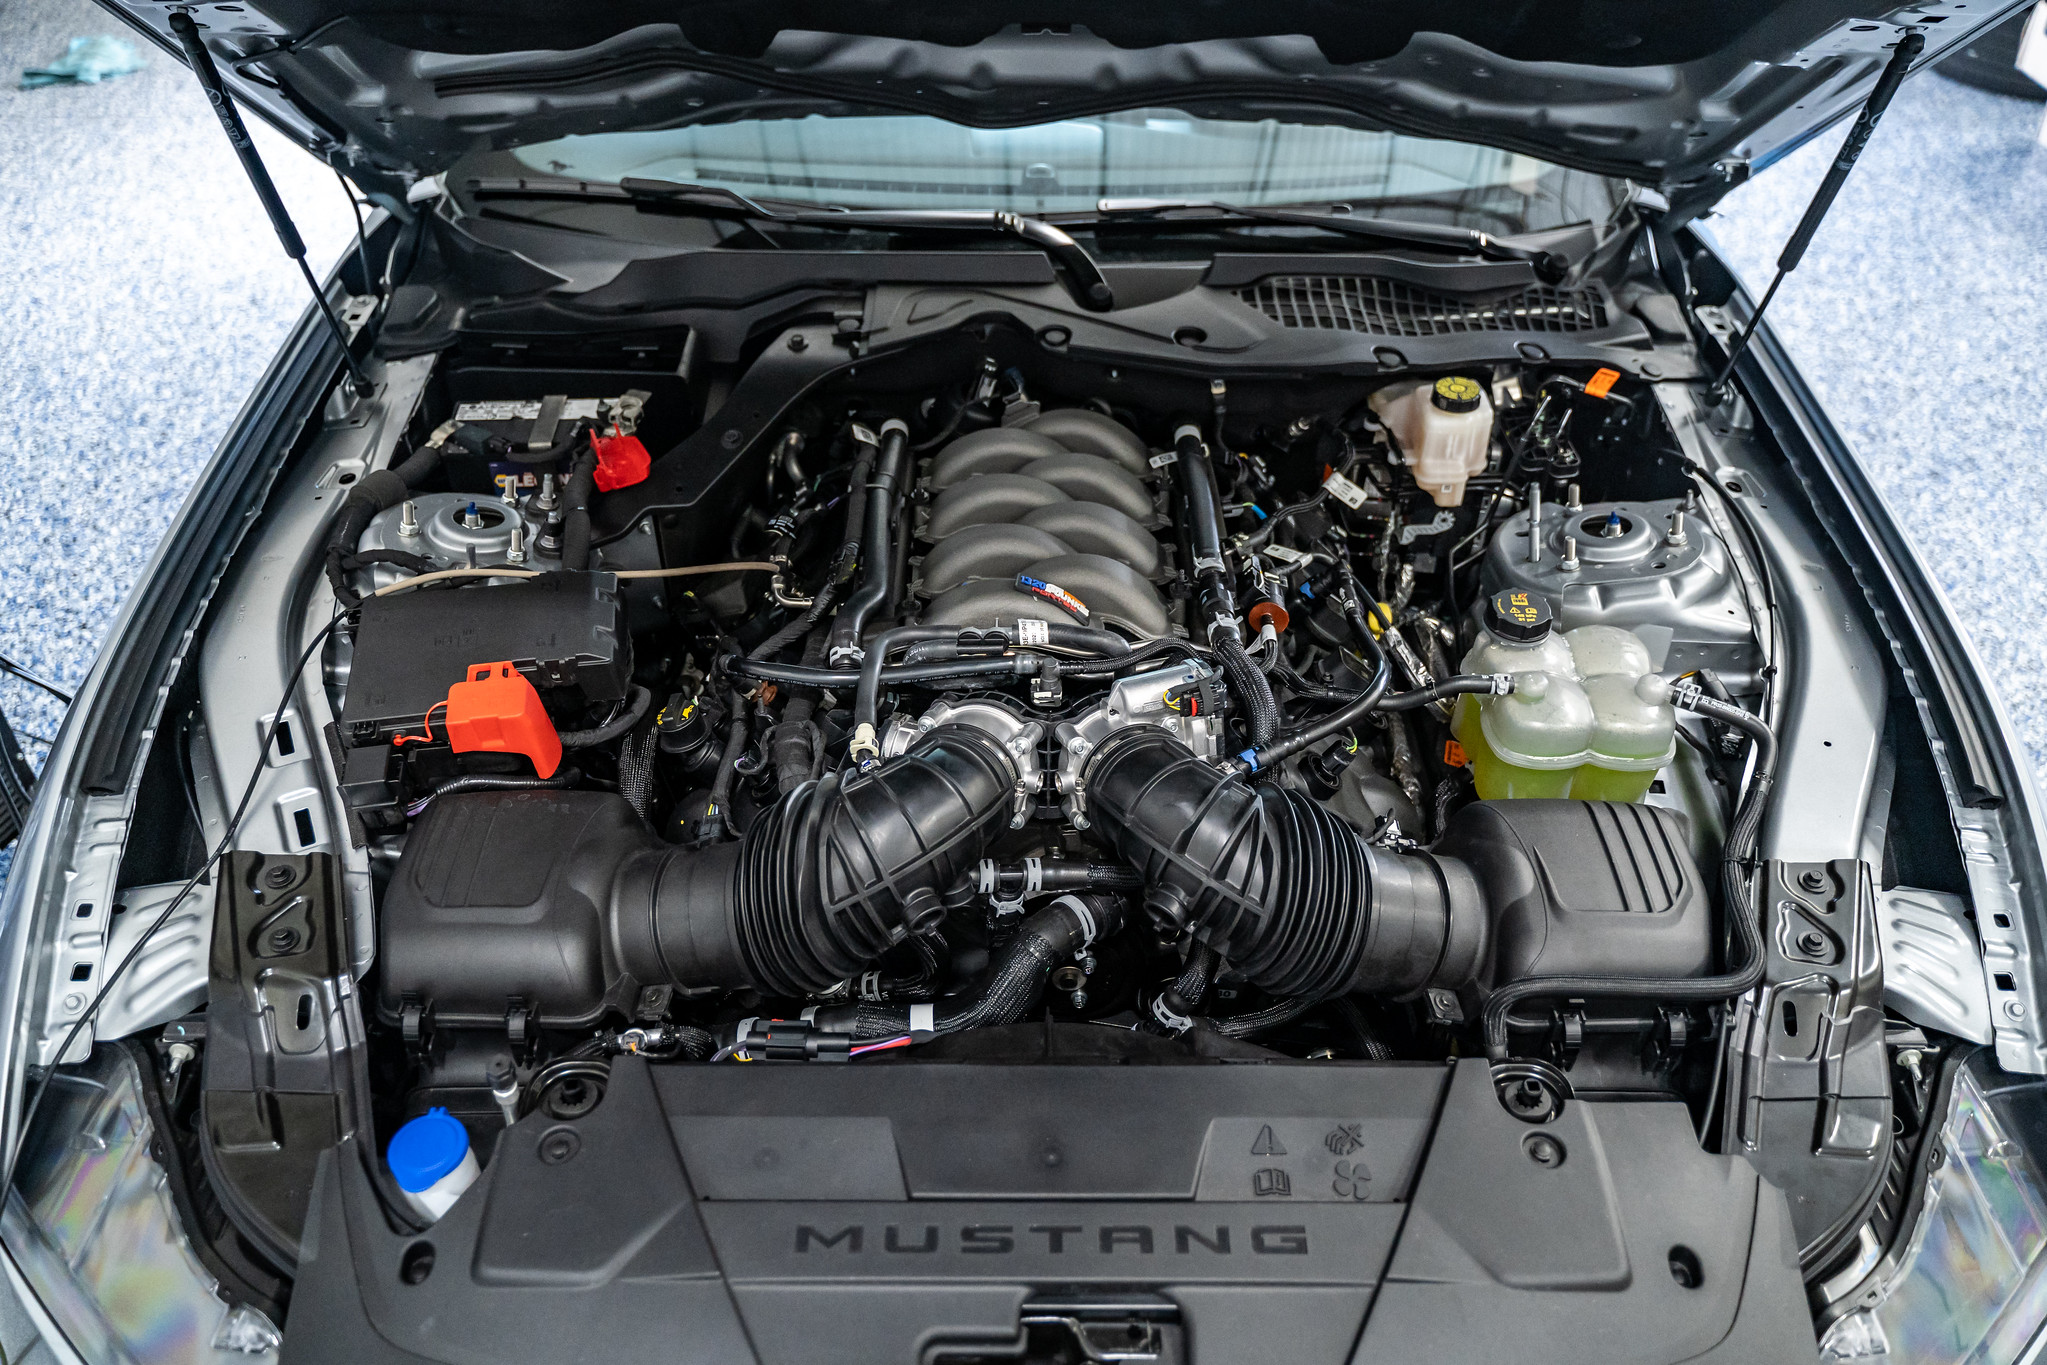 S650 Mustang Steeda 2024 Mustang GT Drag Car Runs 10s - 93 Pump Gas, No Nitrous! 53252330113_52a4ec6f82_k